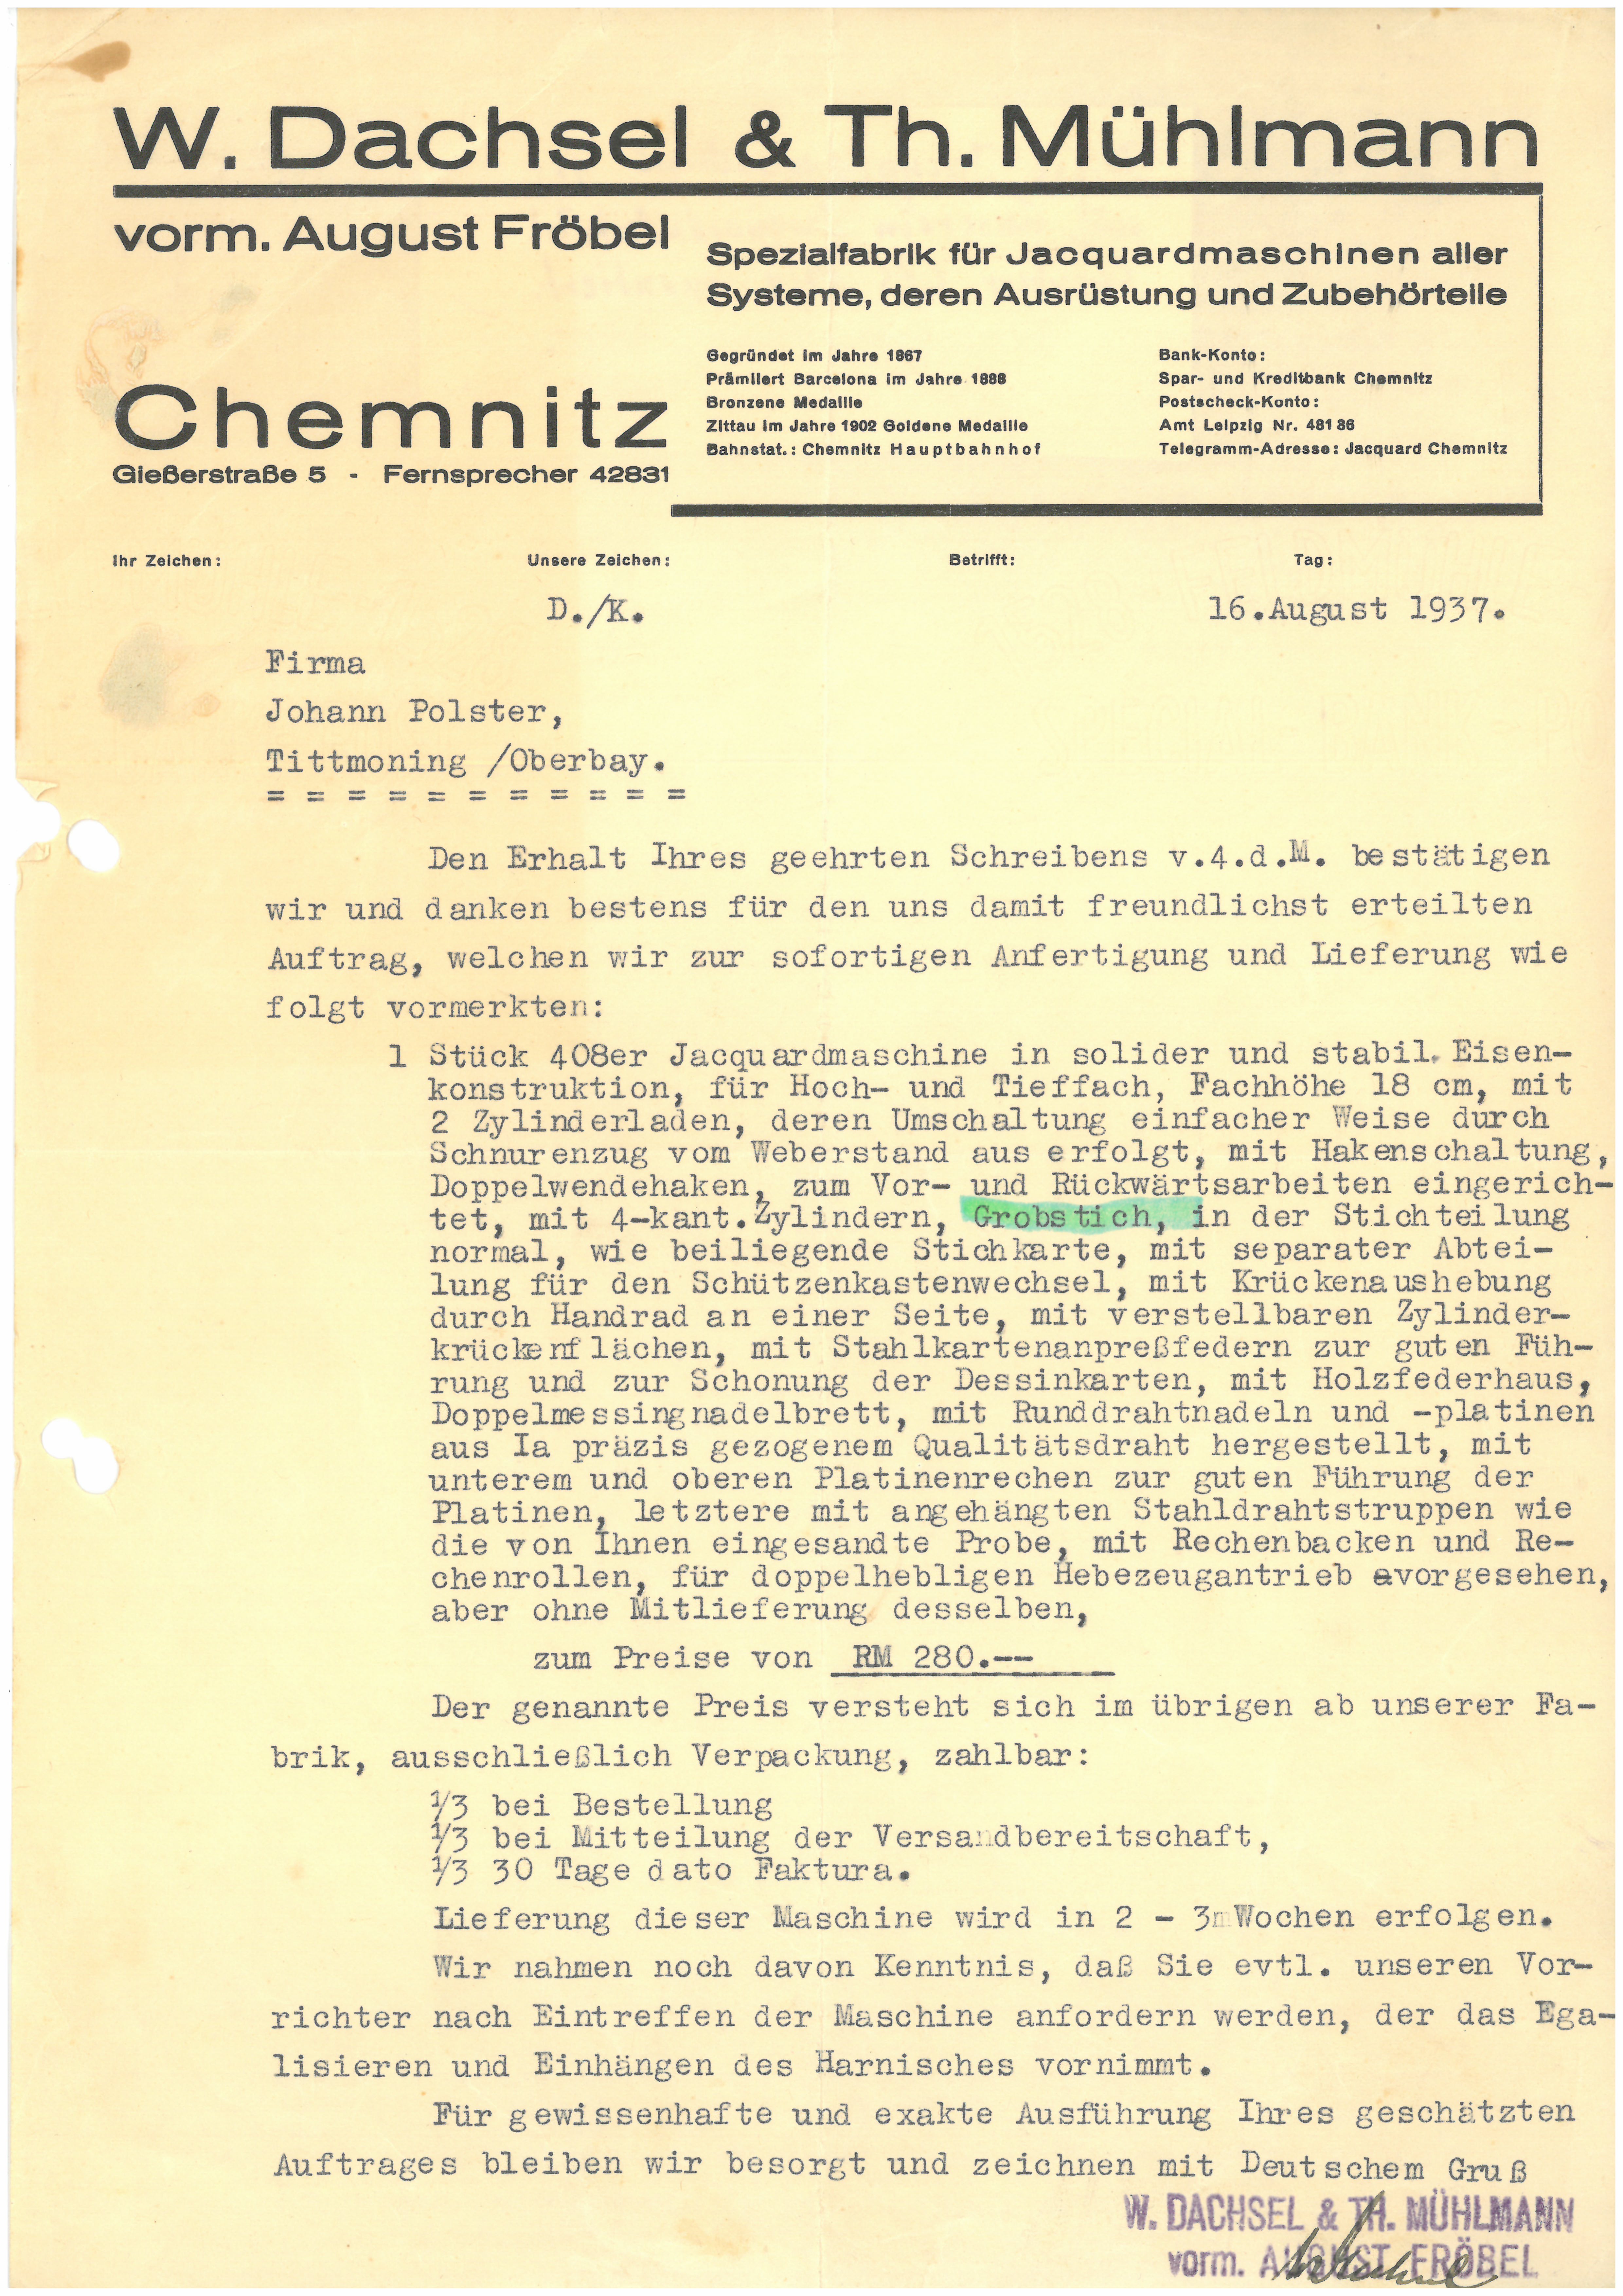 Auftragsbestätigung der Fa. W. Dachsel & Th. Mühlmann vom 16. August 1937 (Tuchmacher Museum Bramsche CC BY-NC-SA)